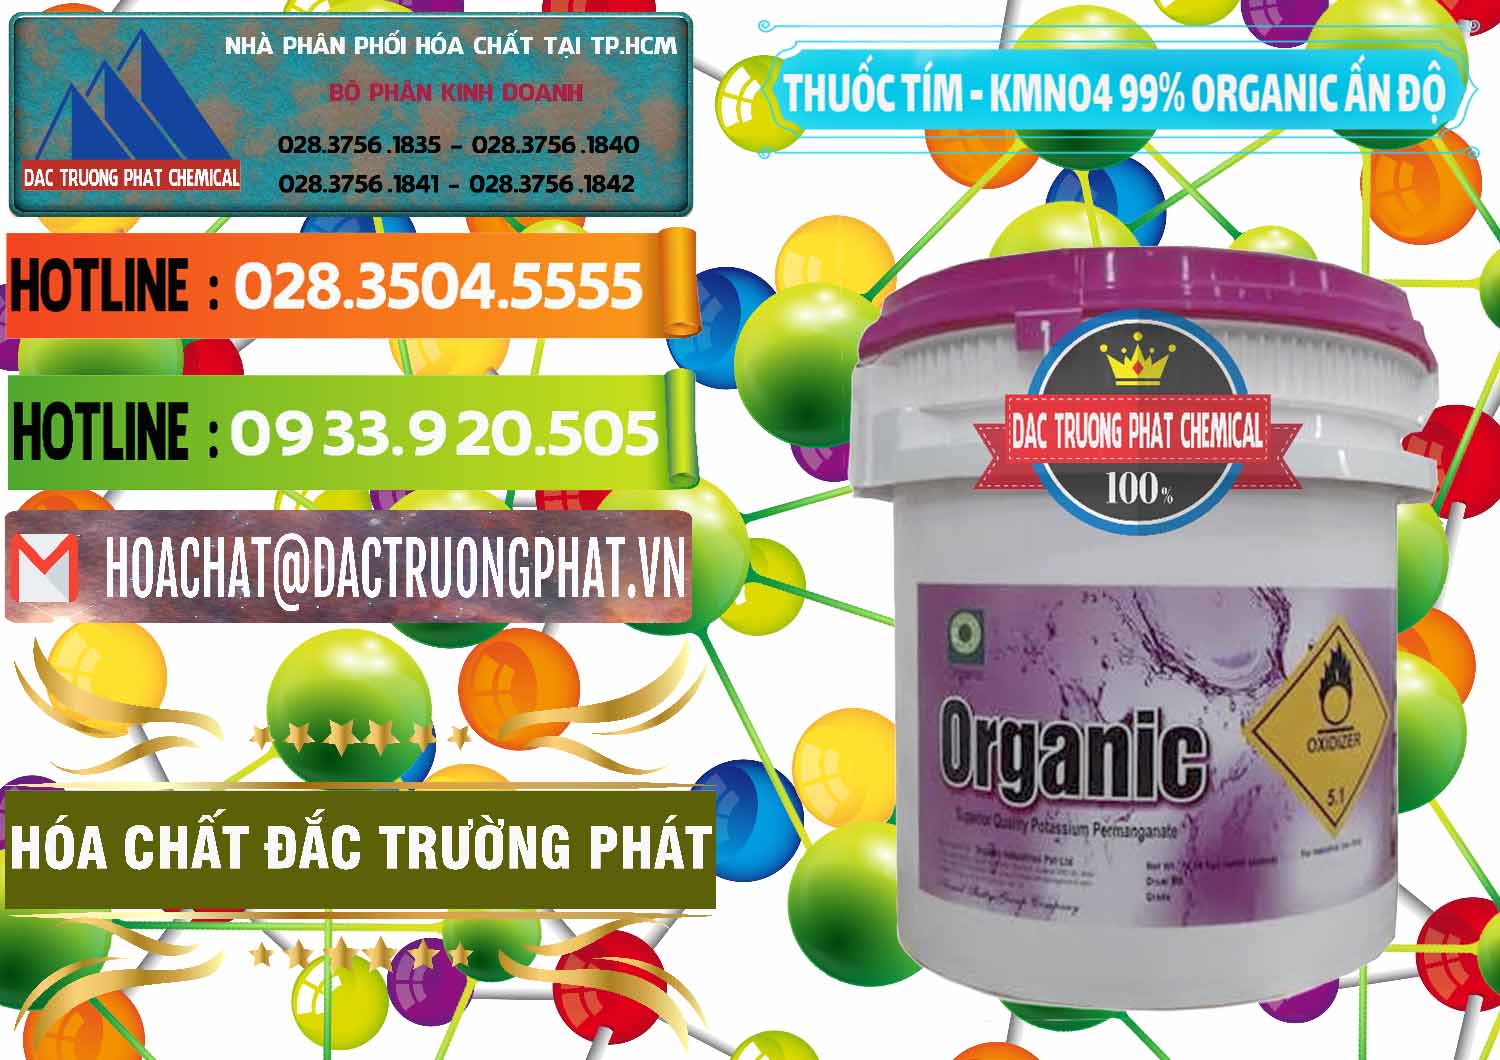 Cty bán - cung ứng Thuốc Tím - KMNO4 99% Organic Ấn Độ India - 0216 - Kinh doanh _ phân phối hóa chất tại TP.HCM - cungcaphoachat.com.vn